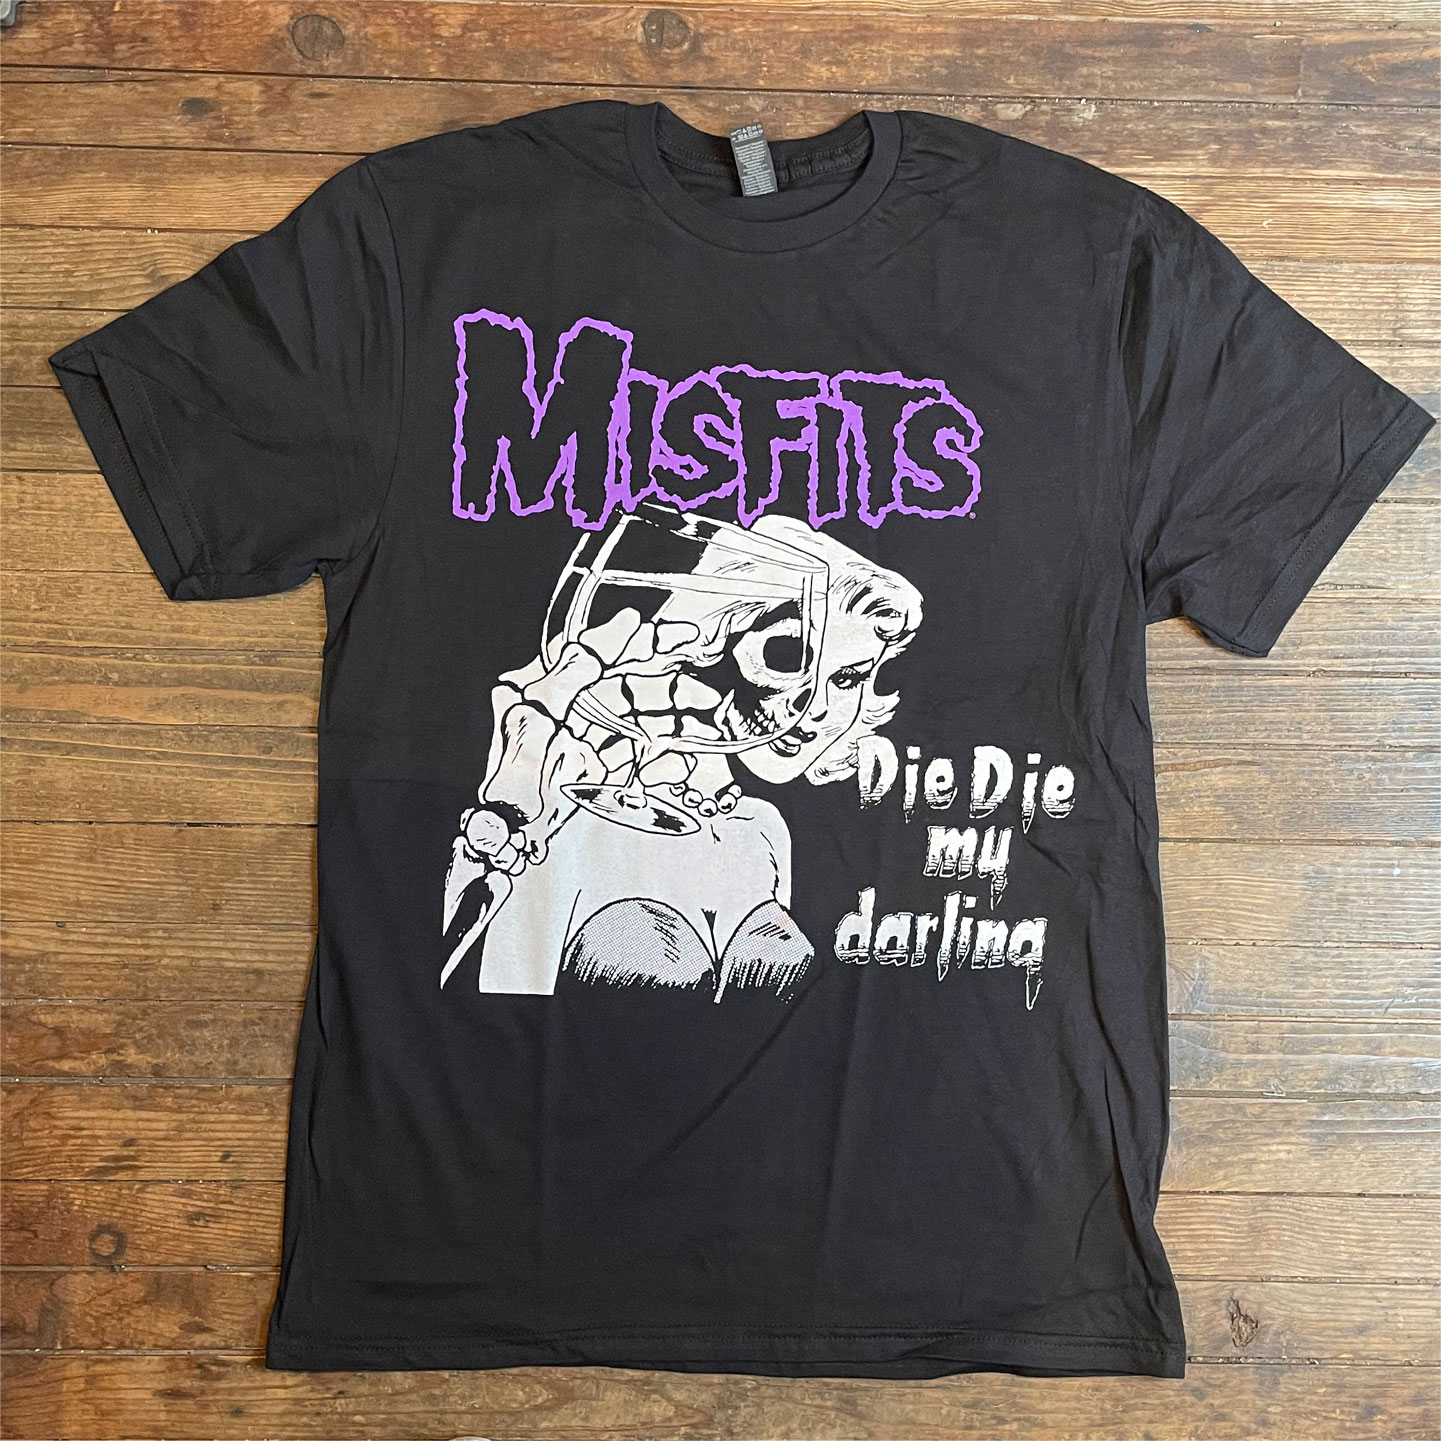 返品送料無料 トップス misfits misfits Tシャツ XL T トップス